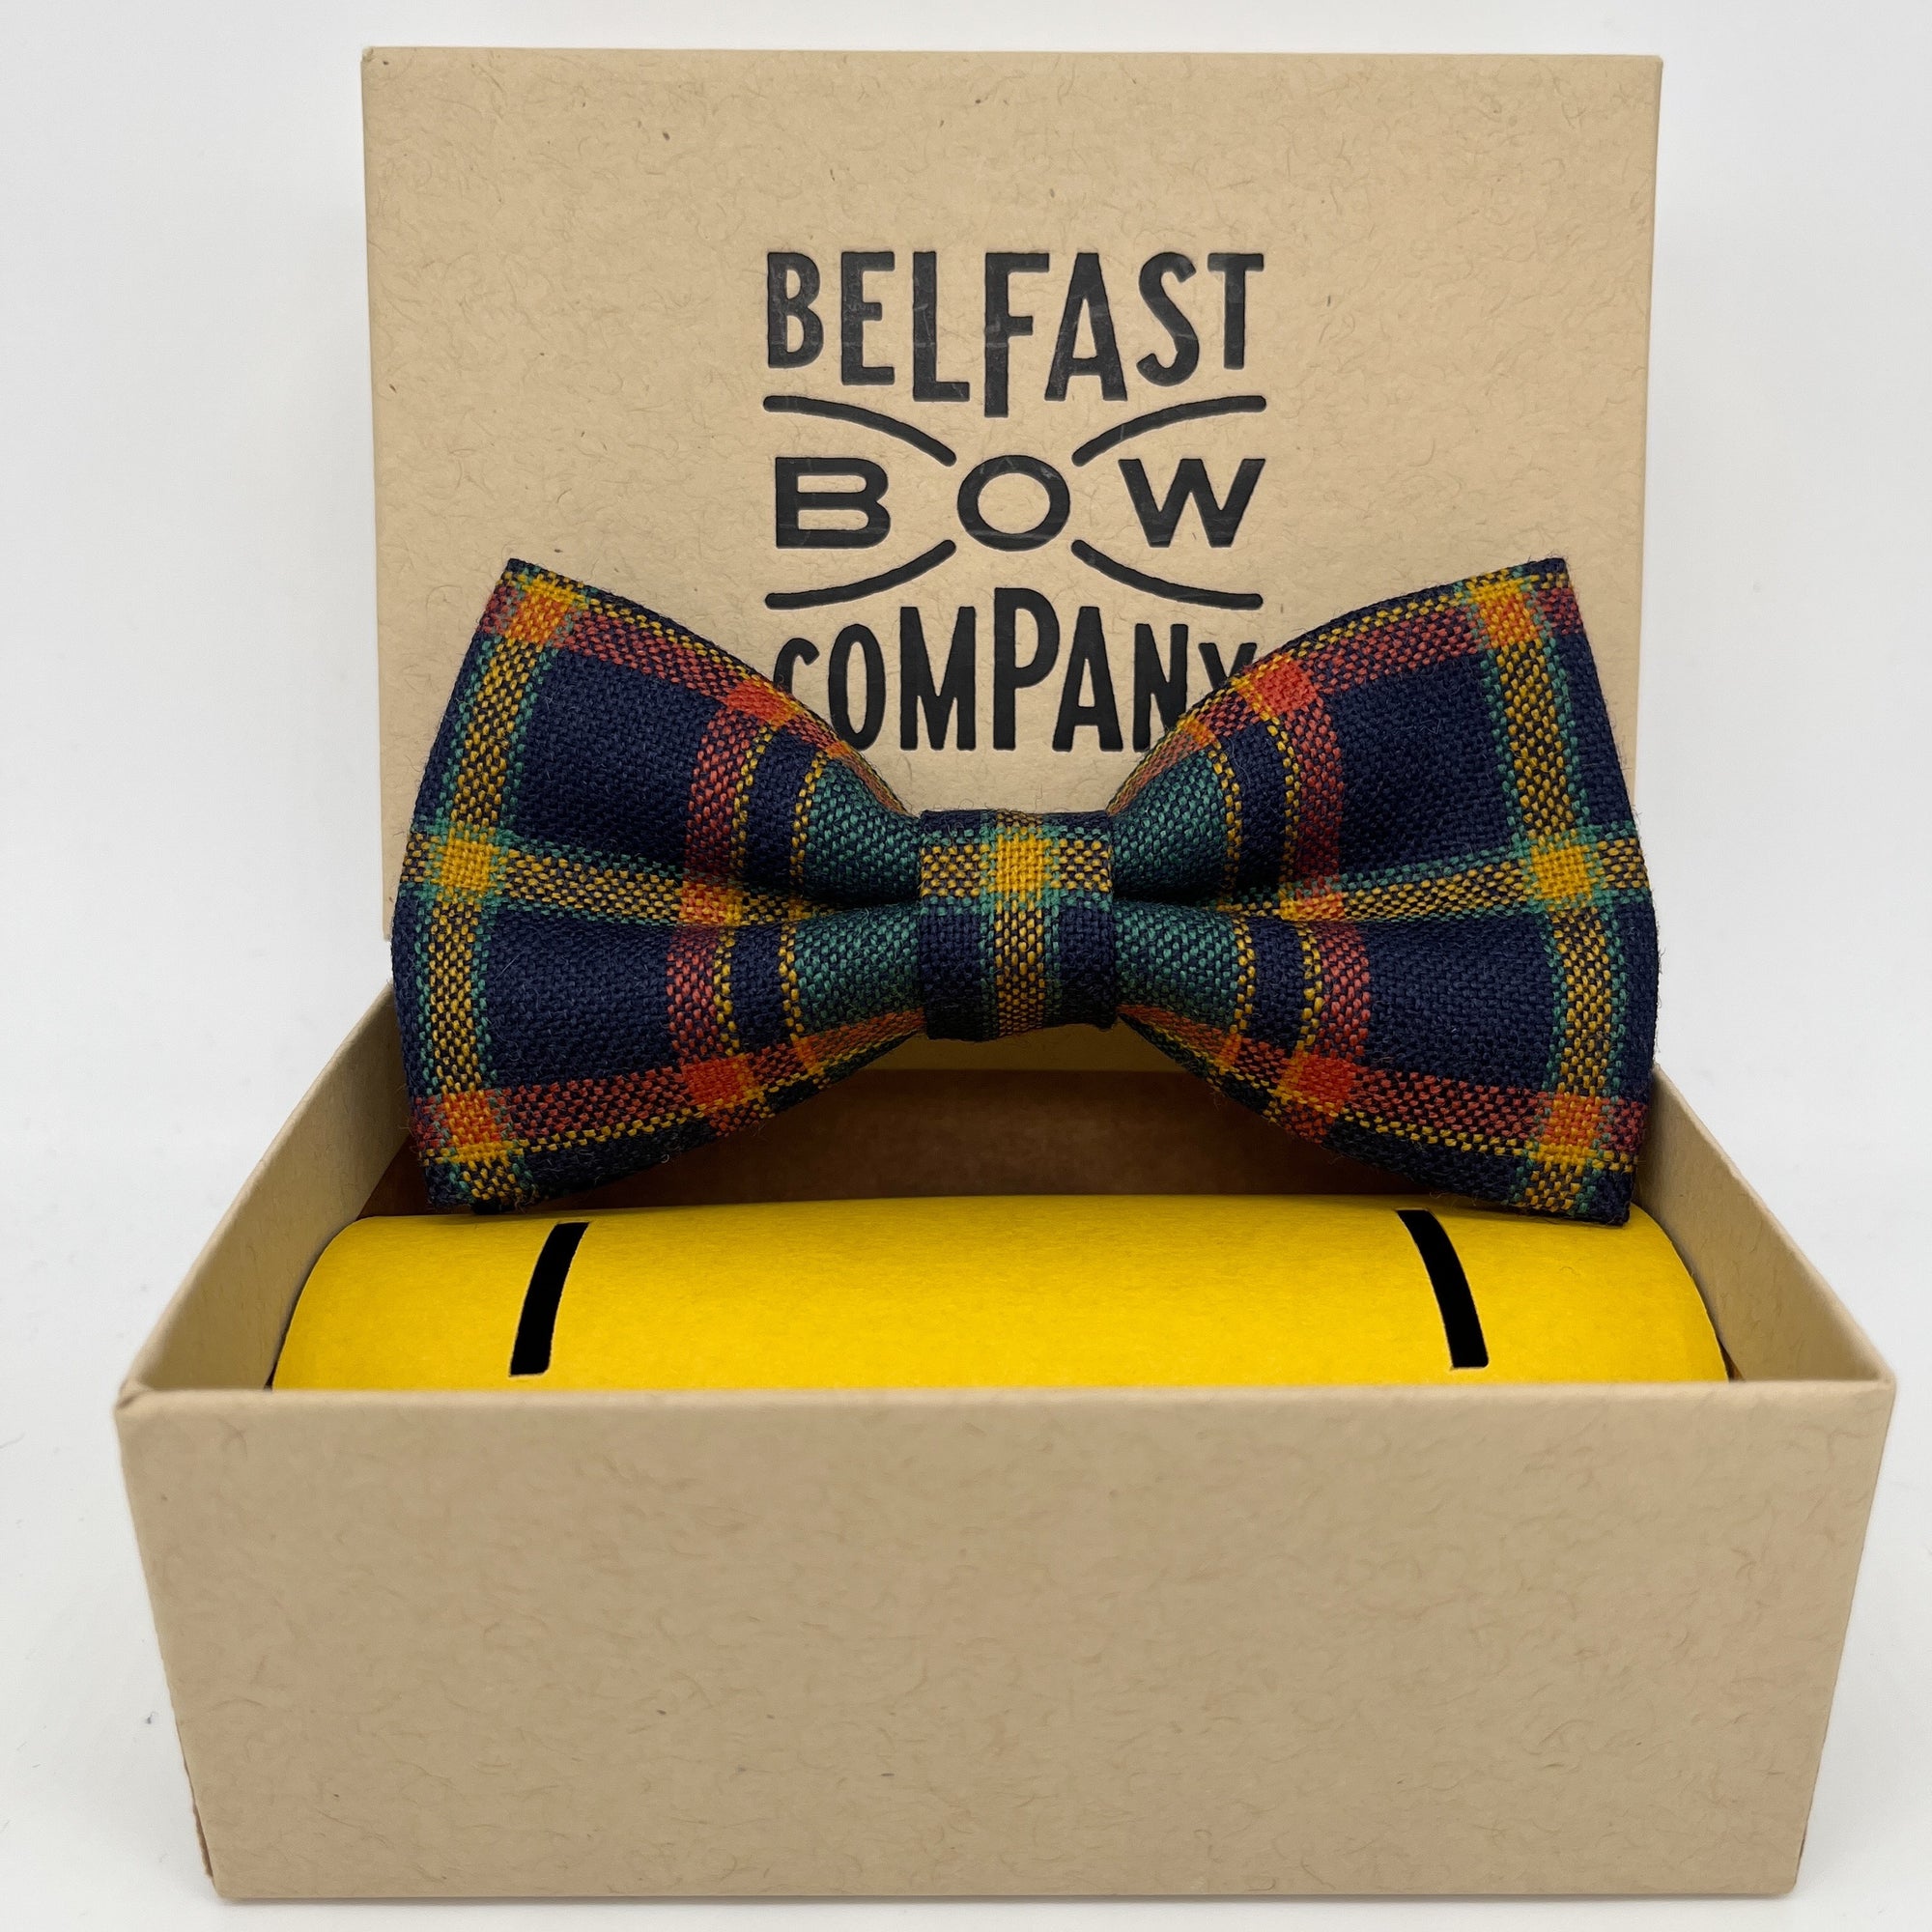 County Antrim Tartan Dickie Bow Tie by the Belfast Bow Company